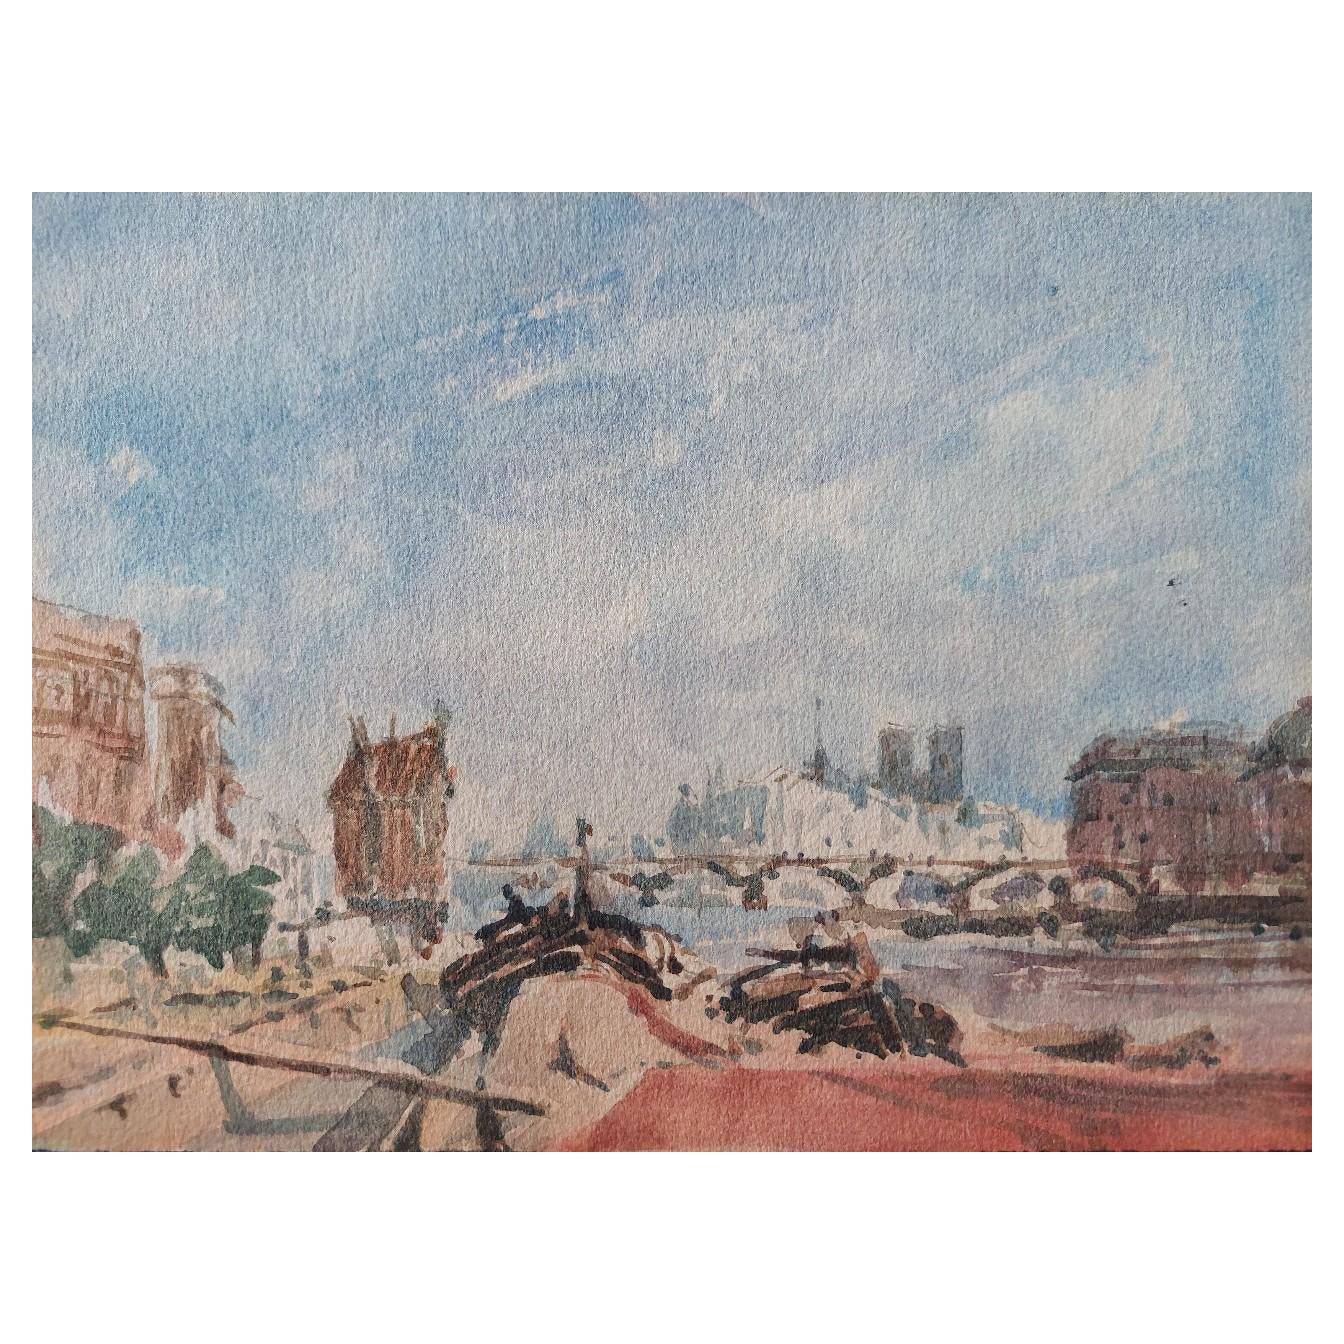 Peinture cubiste française moderniste de Paris représentant les barges de la Seine